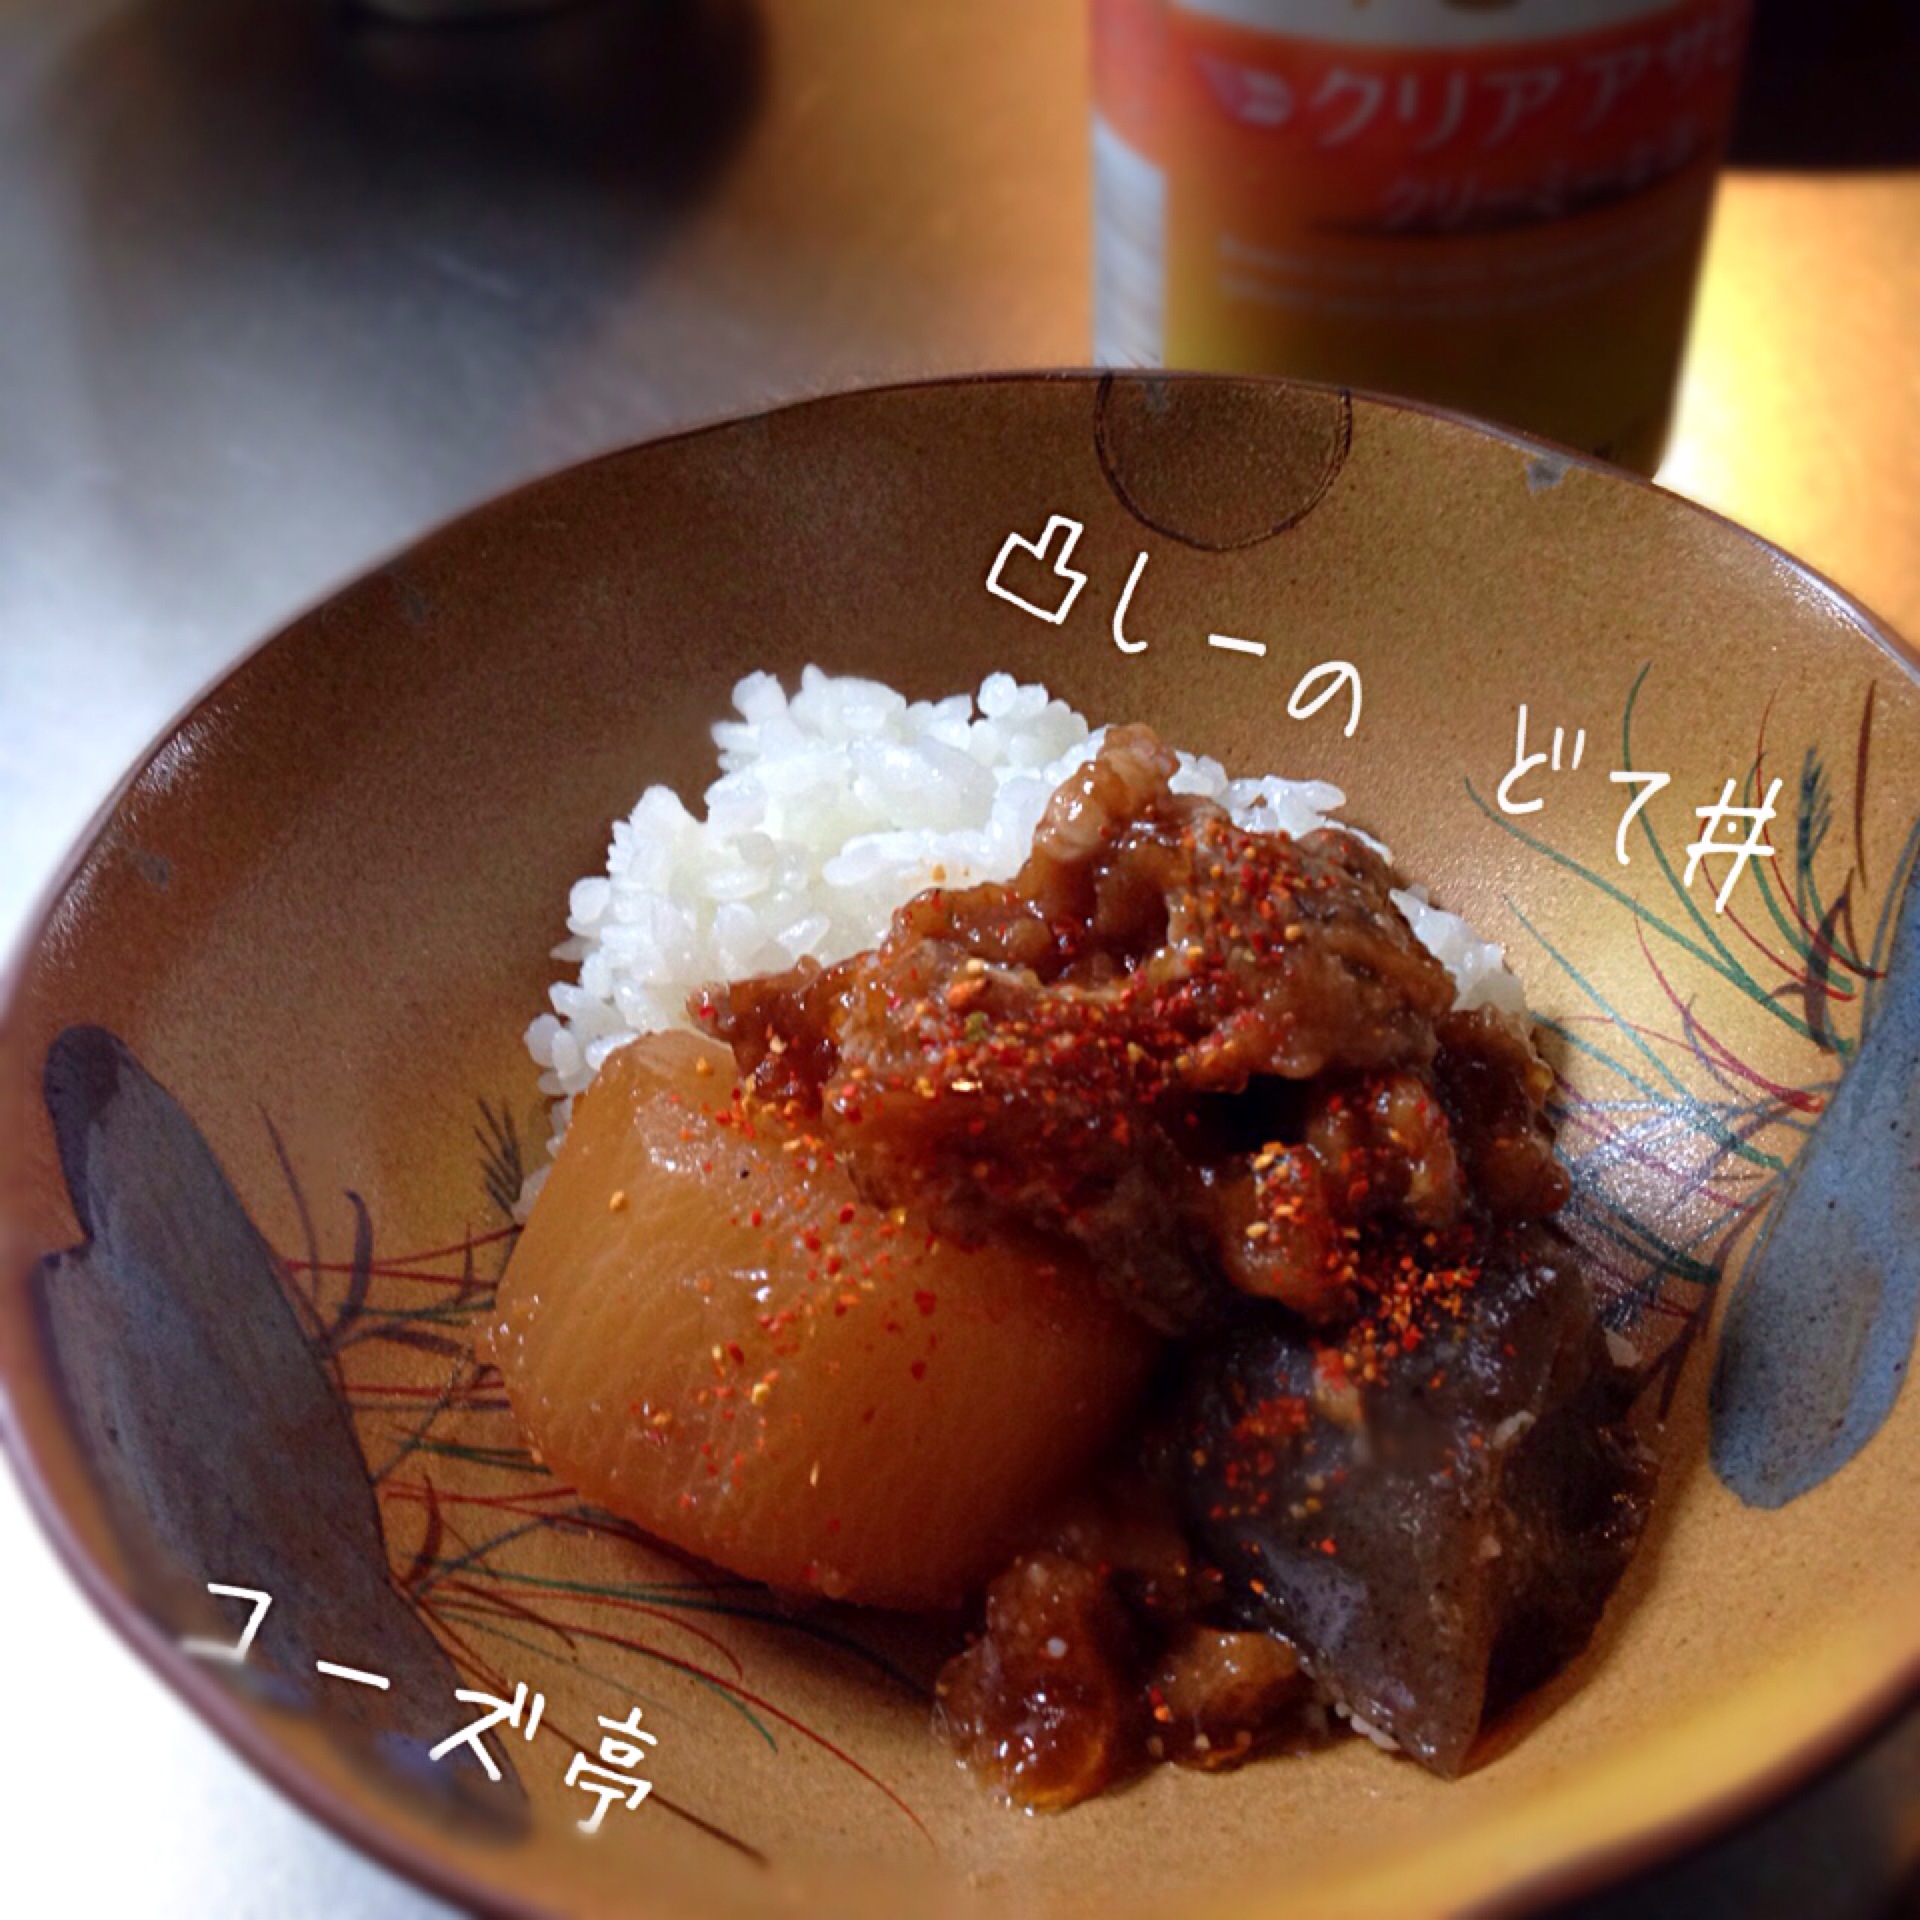 【続•リスペクトsawakiさま】sawakiさんの料理 どてどどーんっでコーズ亭朝ごは〜ん、こコレうんま〜いど